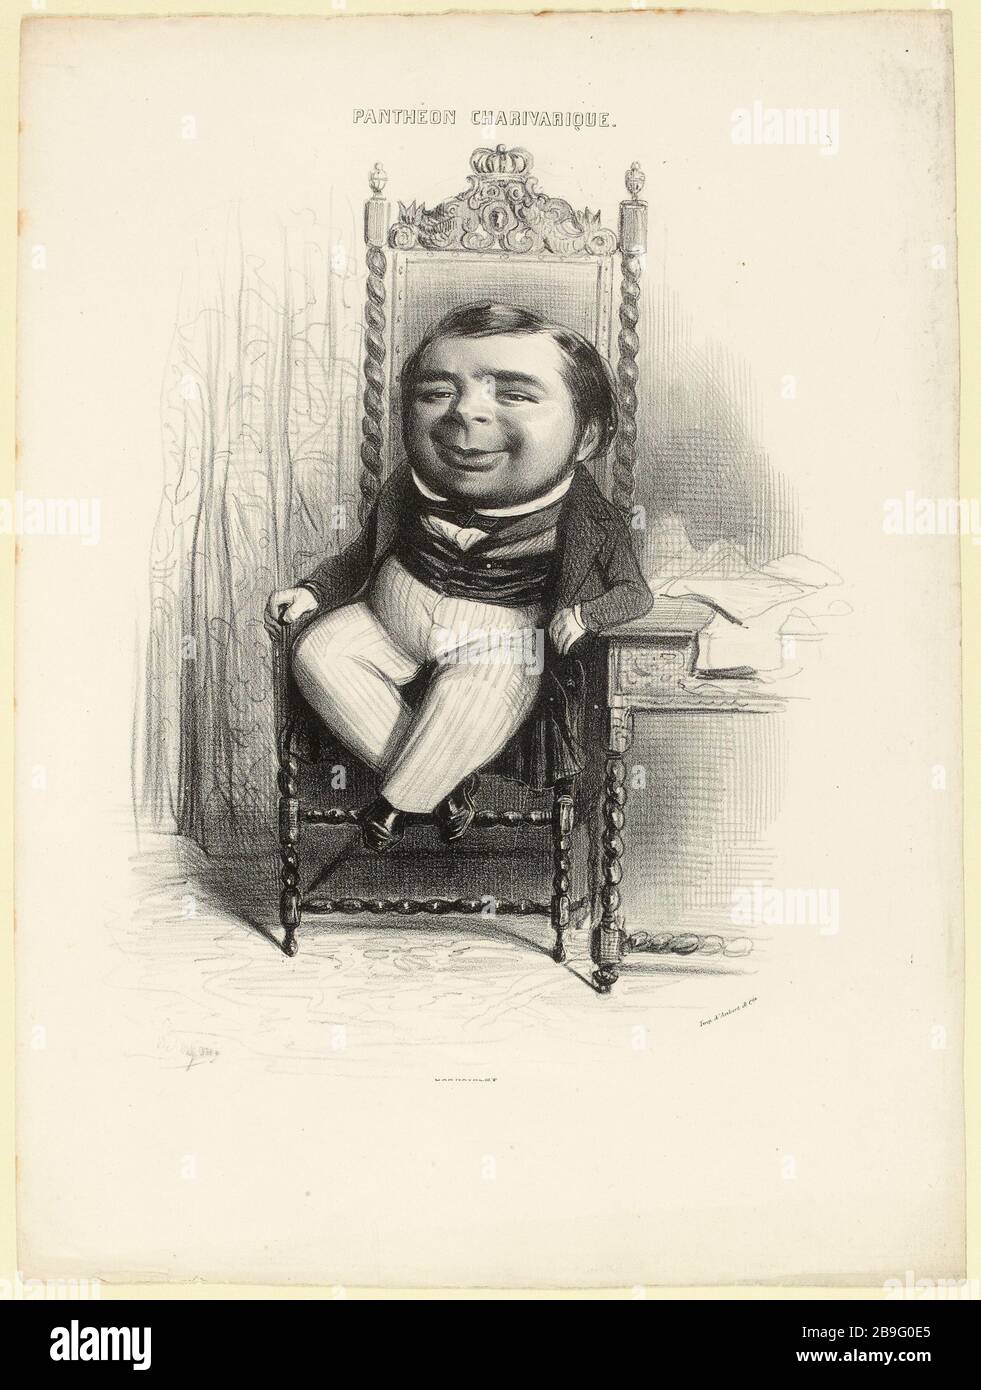 Armand Jean-Michel Dutacq (1810-1856) (titre factice) | PANTHÉON CHARIVARIQUE, no 16 (dans son ensemble). Banque D'Images